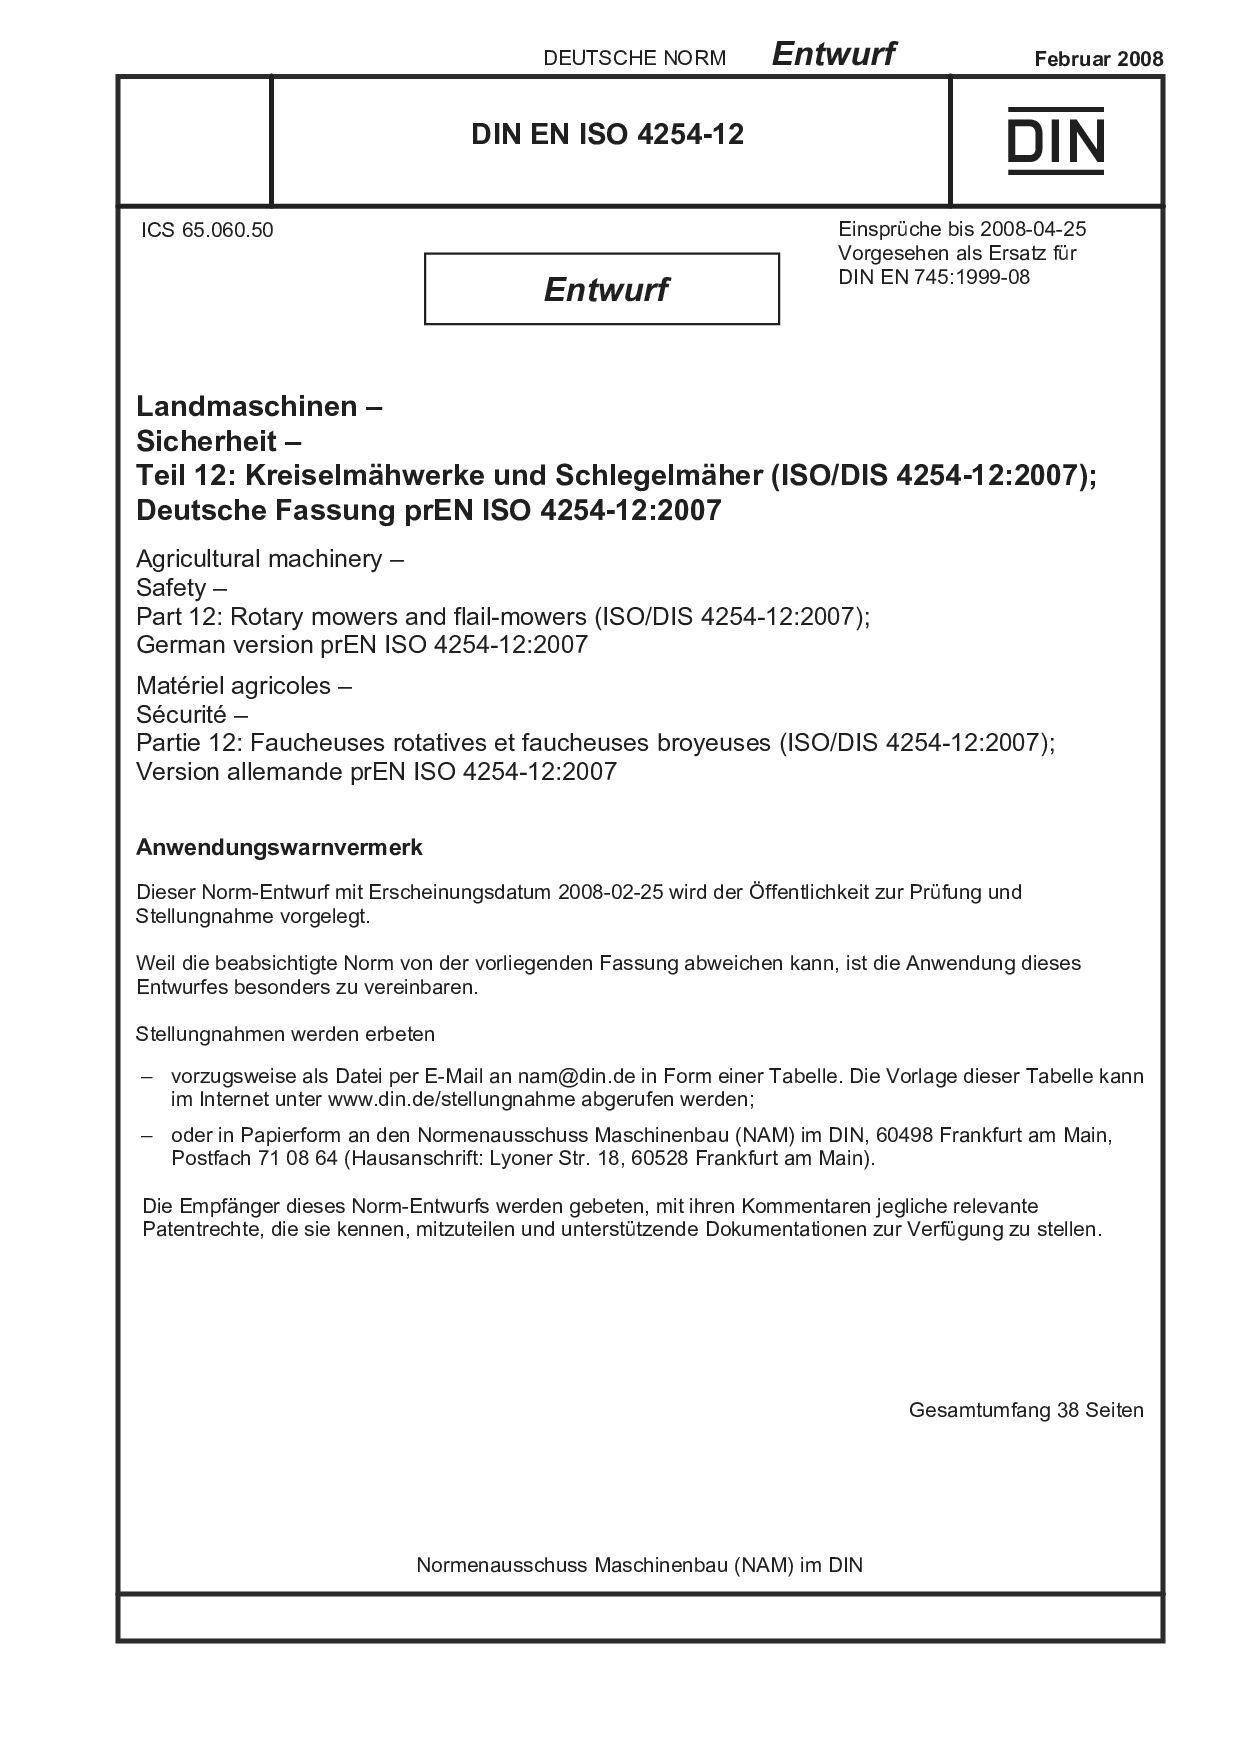 DIN EN ISO 4254-12 E:2008-02封面图